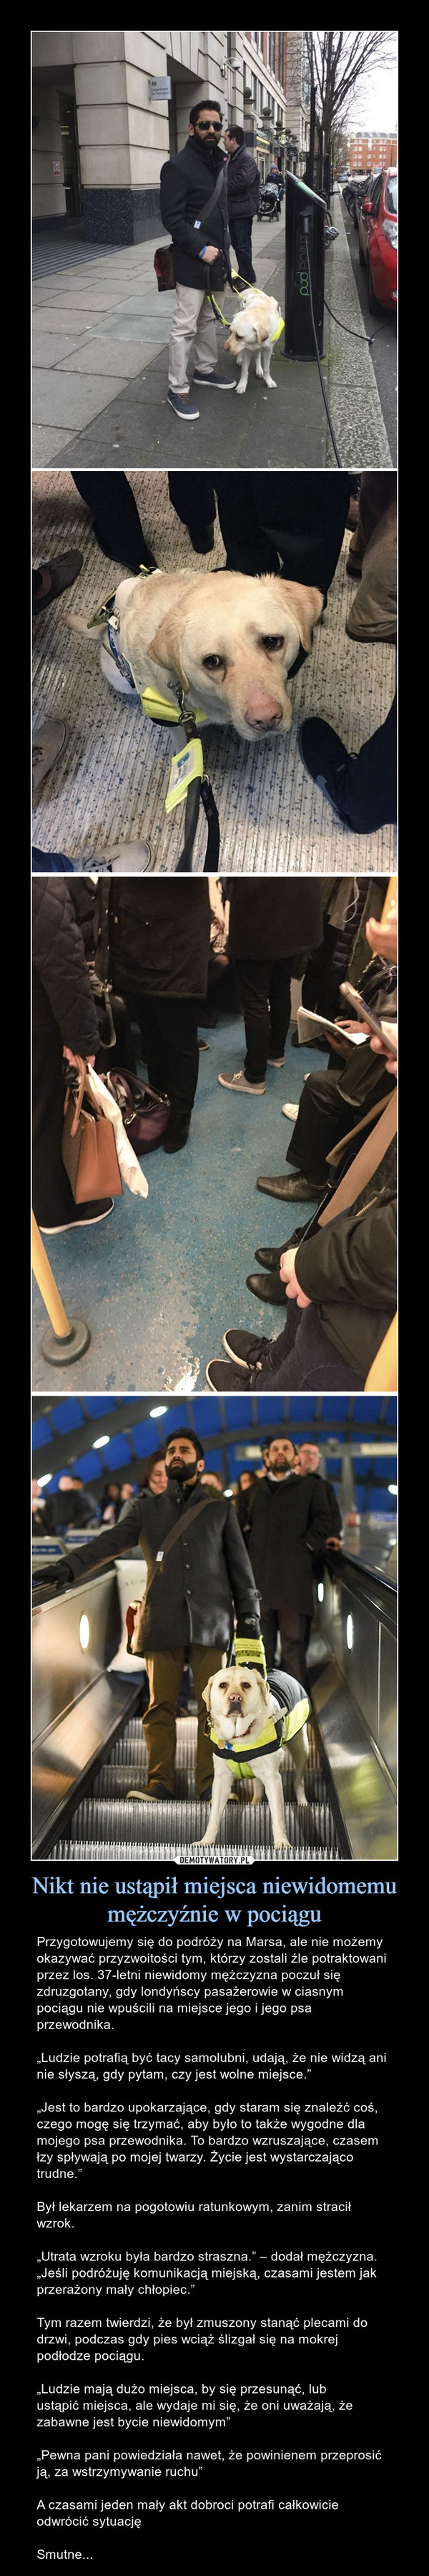 Nikt nie ustąpił miejsca niewidomemu mężczyźnie w pociągu